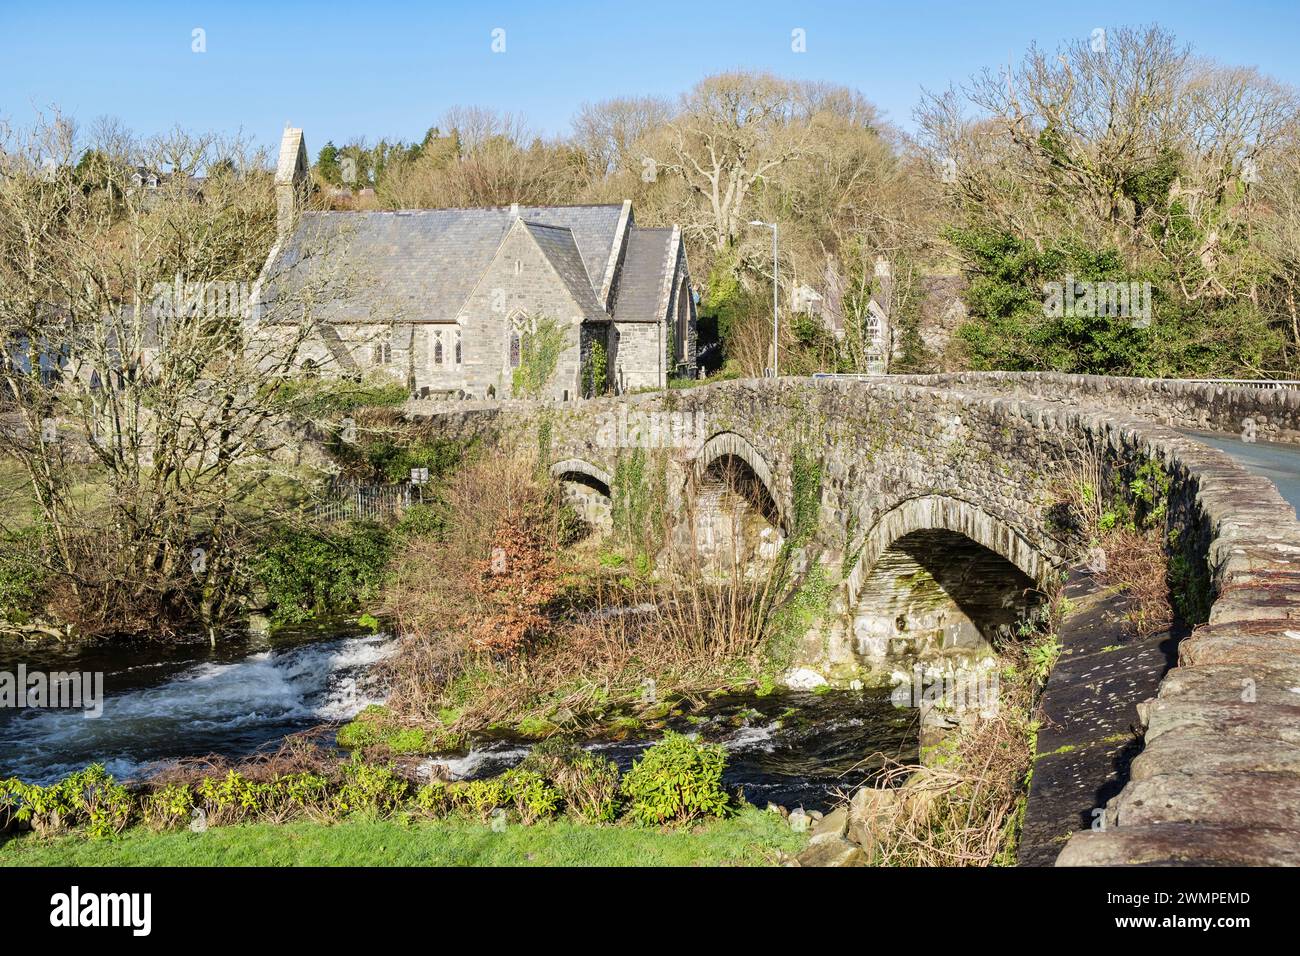 Old 18th century bridge across Afon Dwyfor River with St John's village Church beyond. Llanystumdwy, Criccieth, Llyn Peninsula, Gwynedd, north Wales Stock Photo